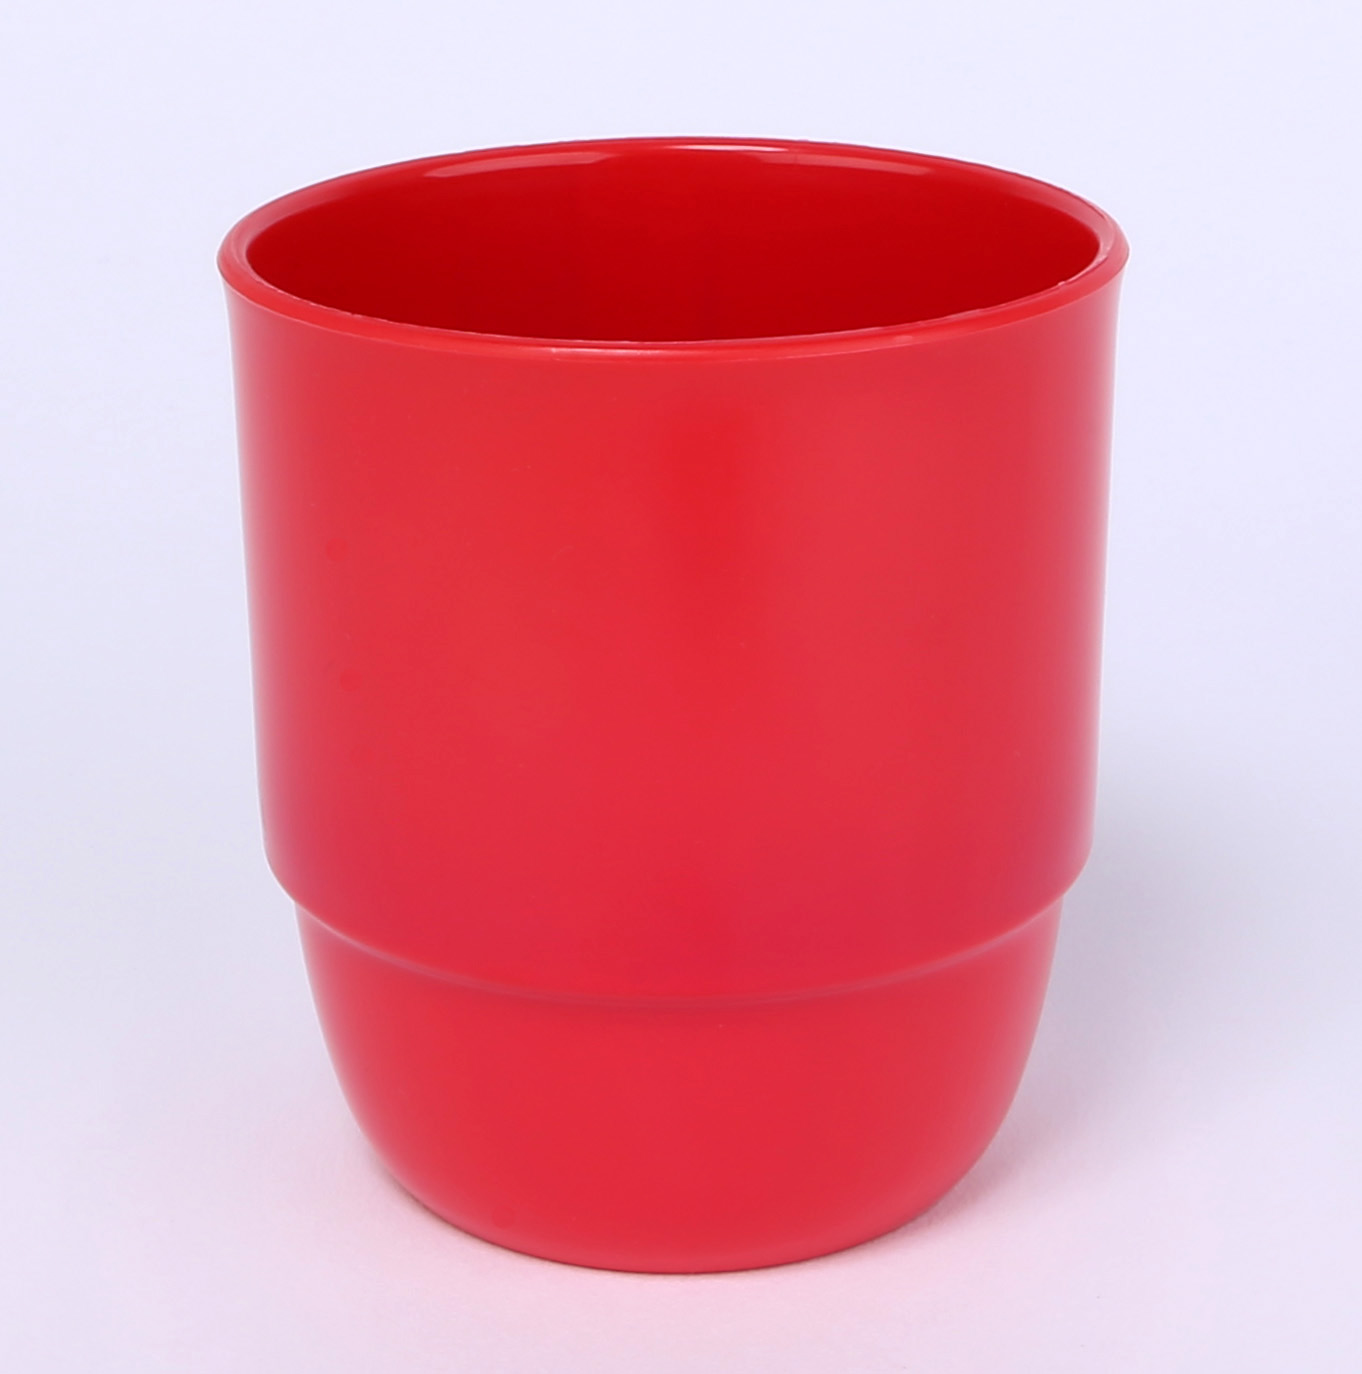 Trinkbecher Zephyr ohne Henkel 0,25 L aus schadstofffreiem Kunststoff  in der Farbe rot.